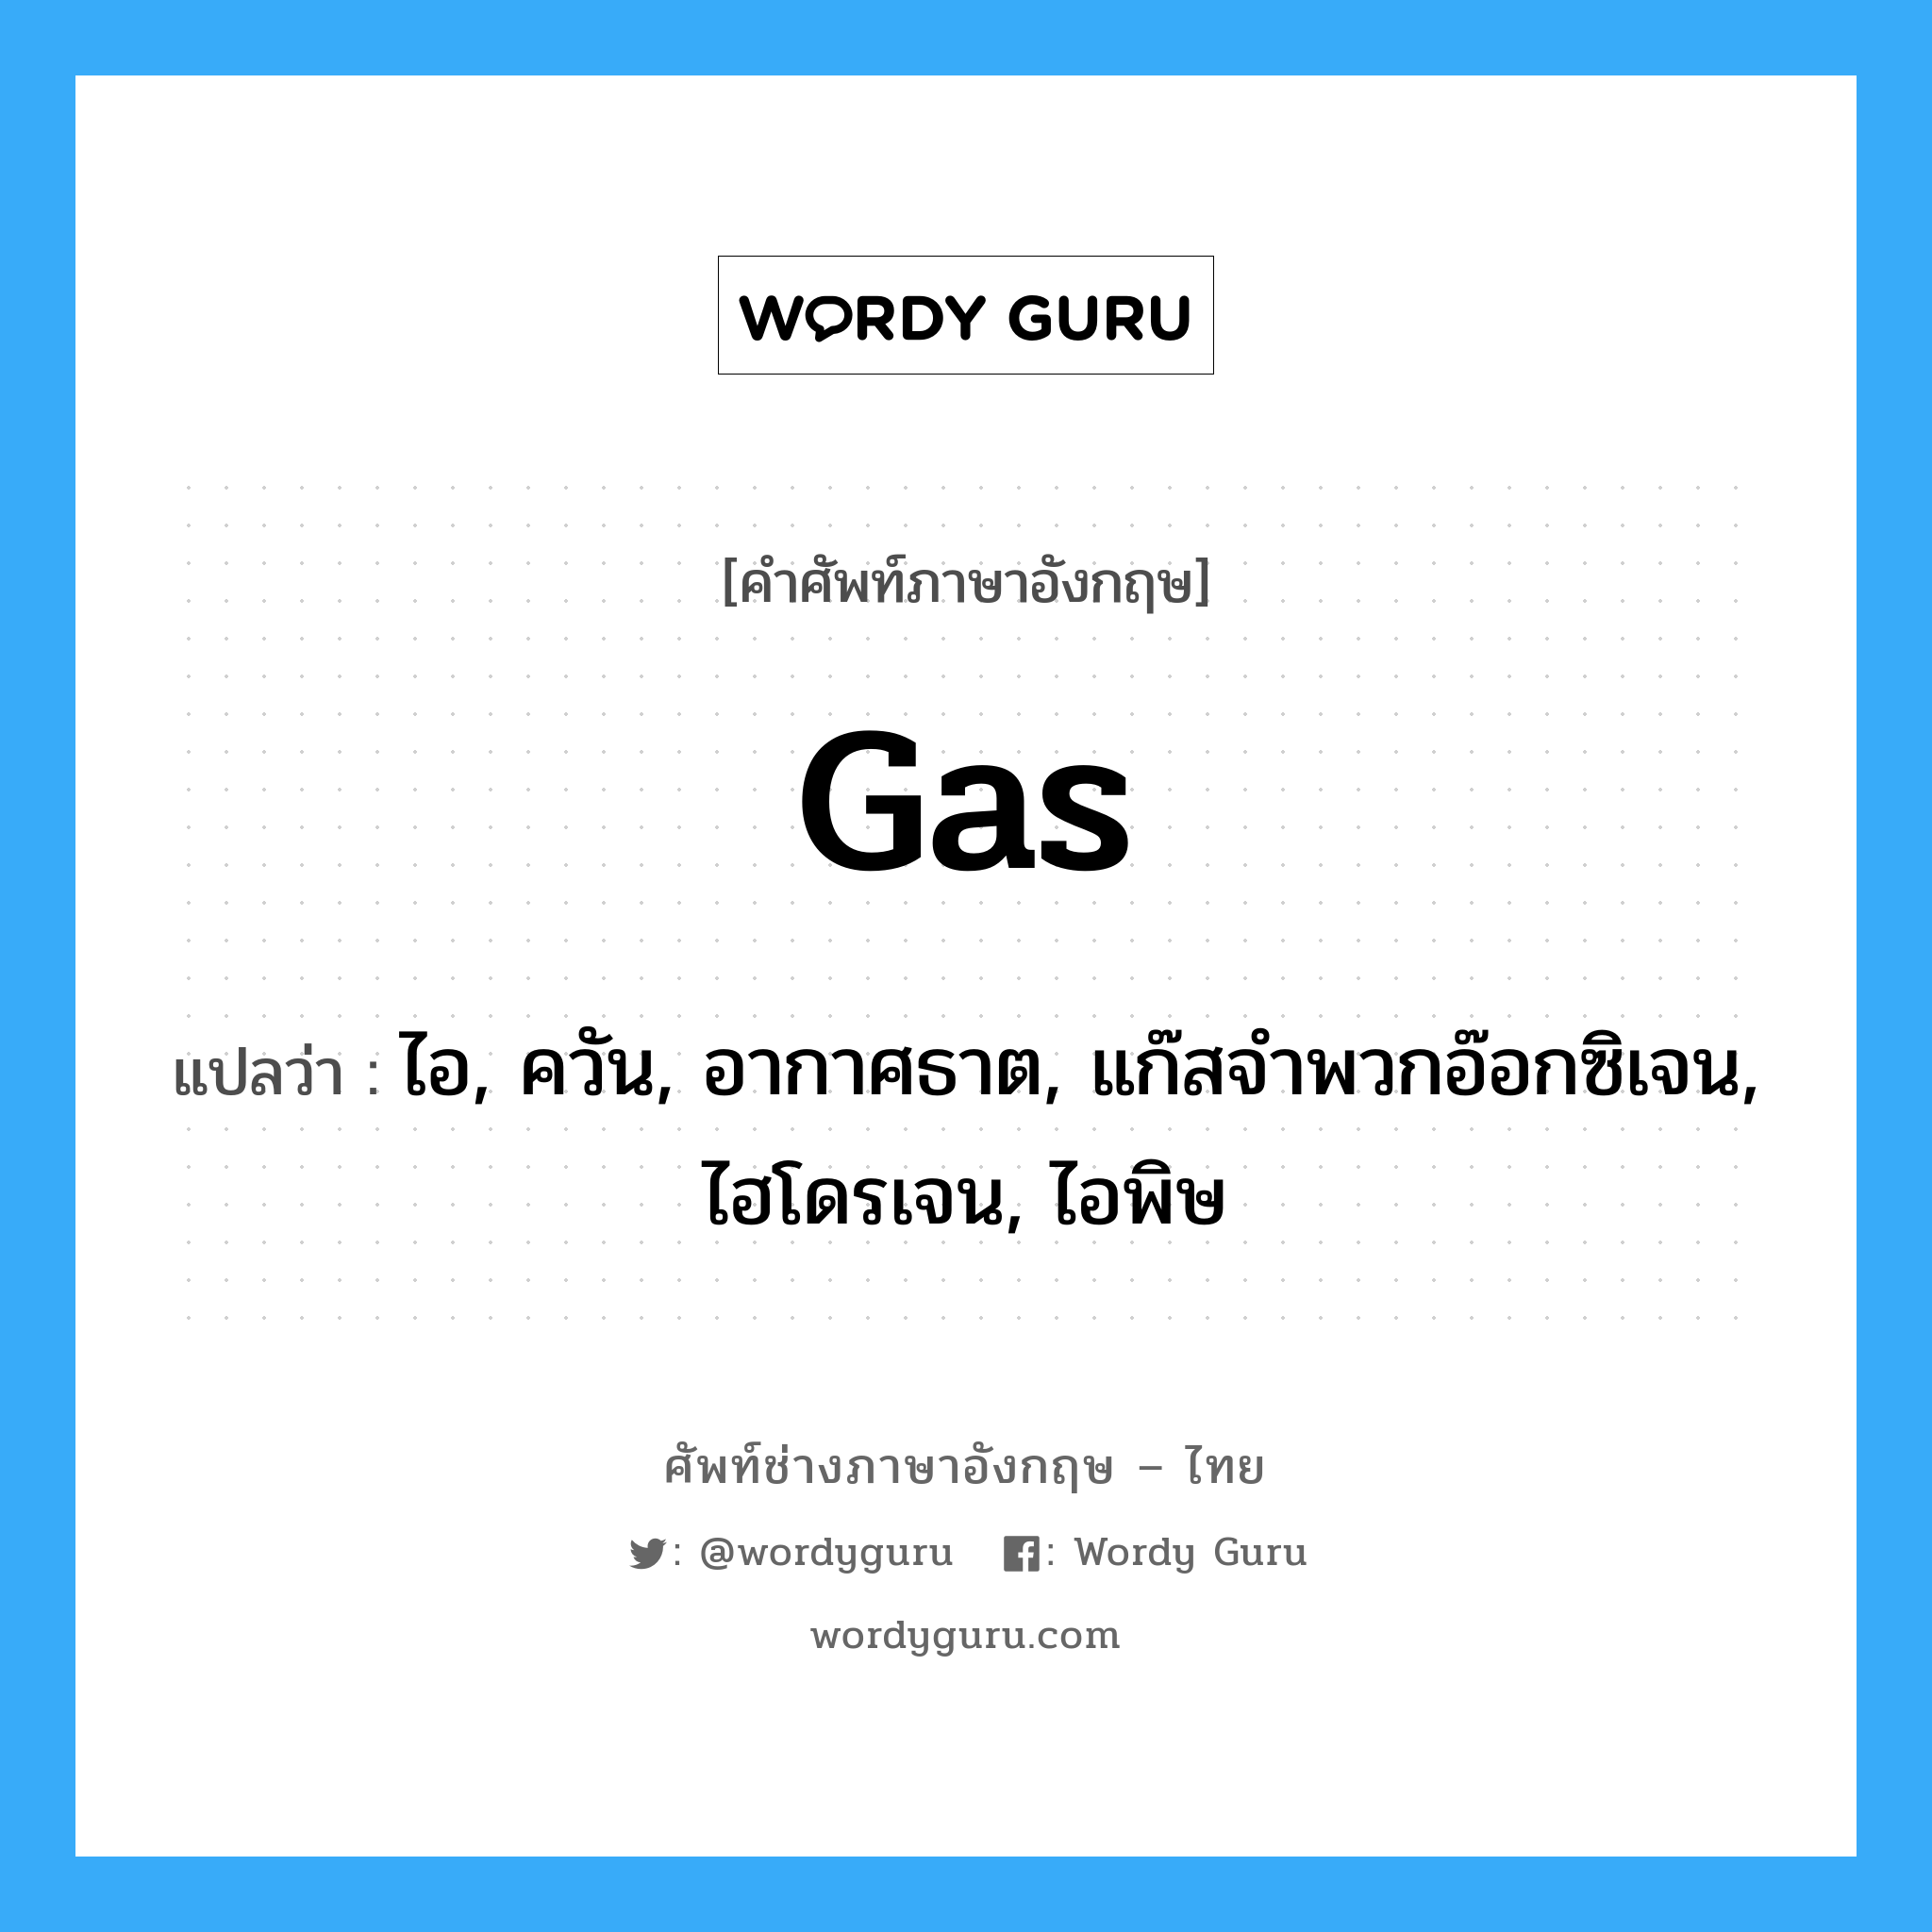 gas แปลว่า?, คำศัพท์ช่างภาษาอังกฤษ - ไทย gas คำศัพท์ภาษาอังกฤษ gas แปลว่า ไอ, ควัน, อากาศธาต, แก๊สจำพวกอ๊อกซิเจน, ไฮโดรเจน, ไอพิษ